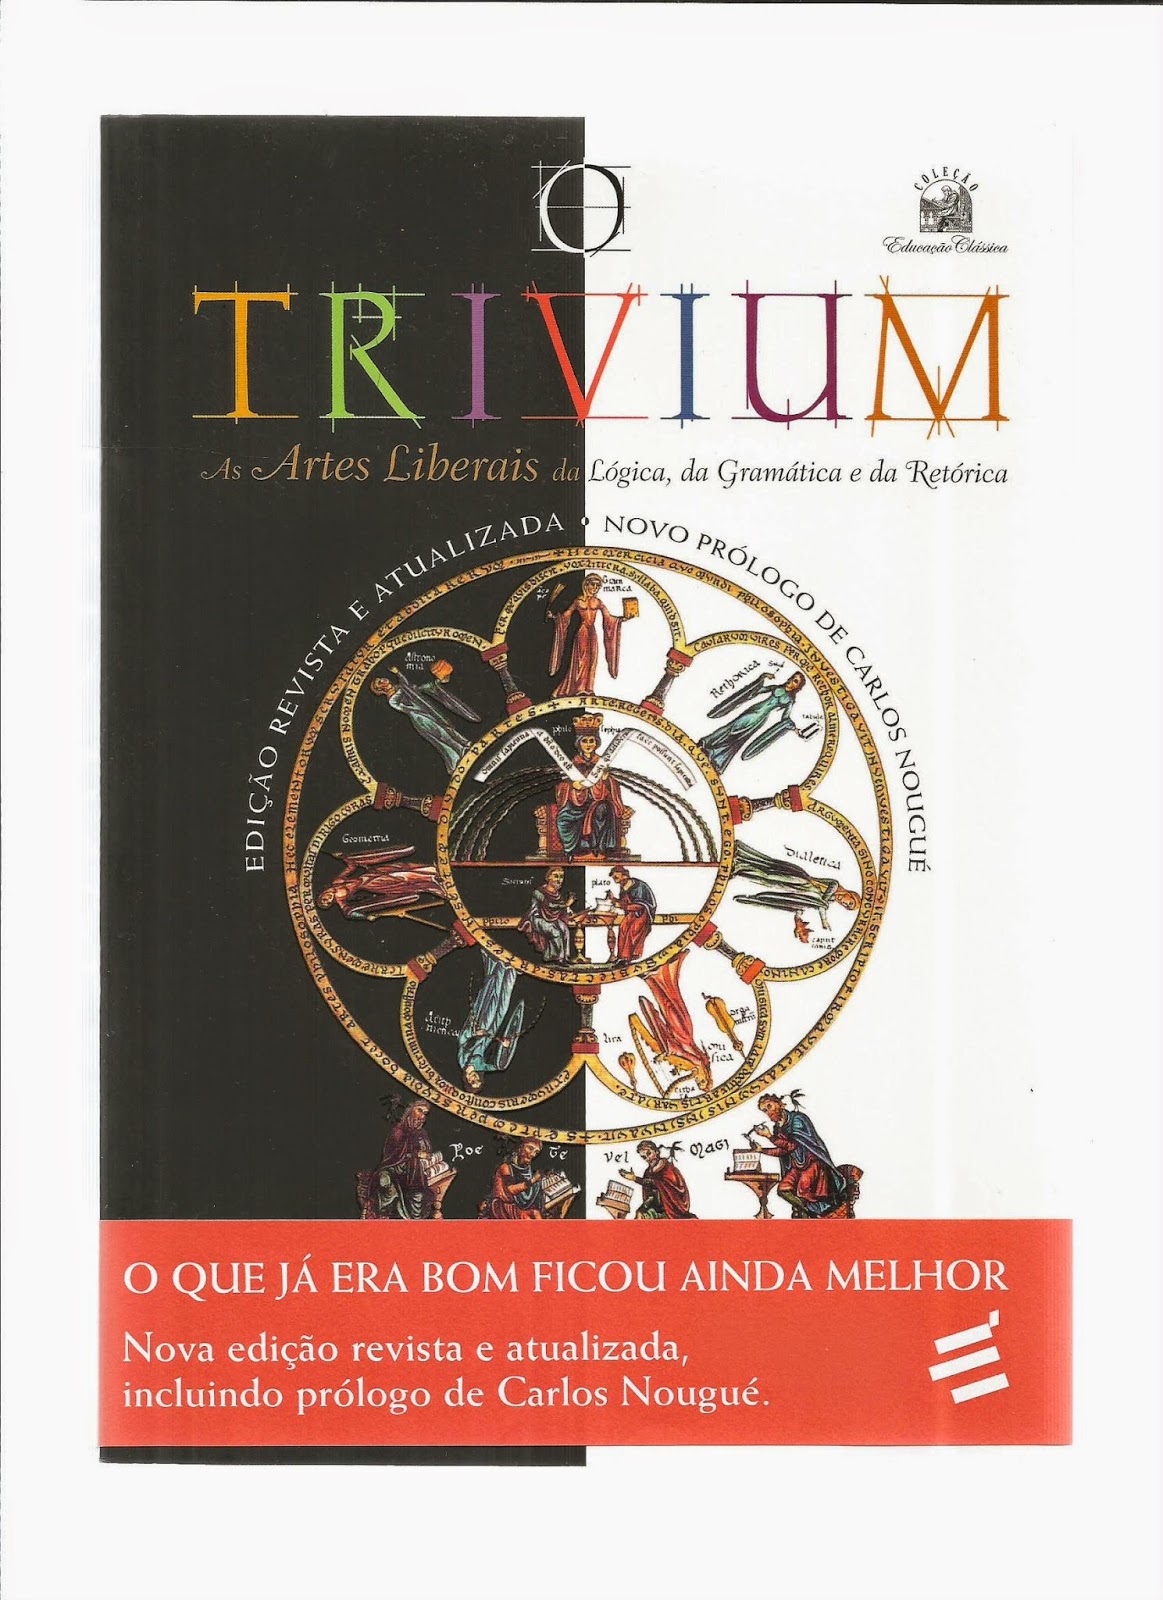 O Trivium